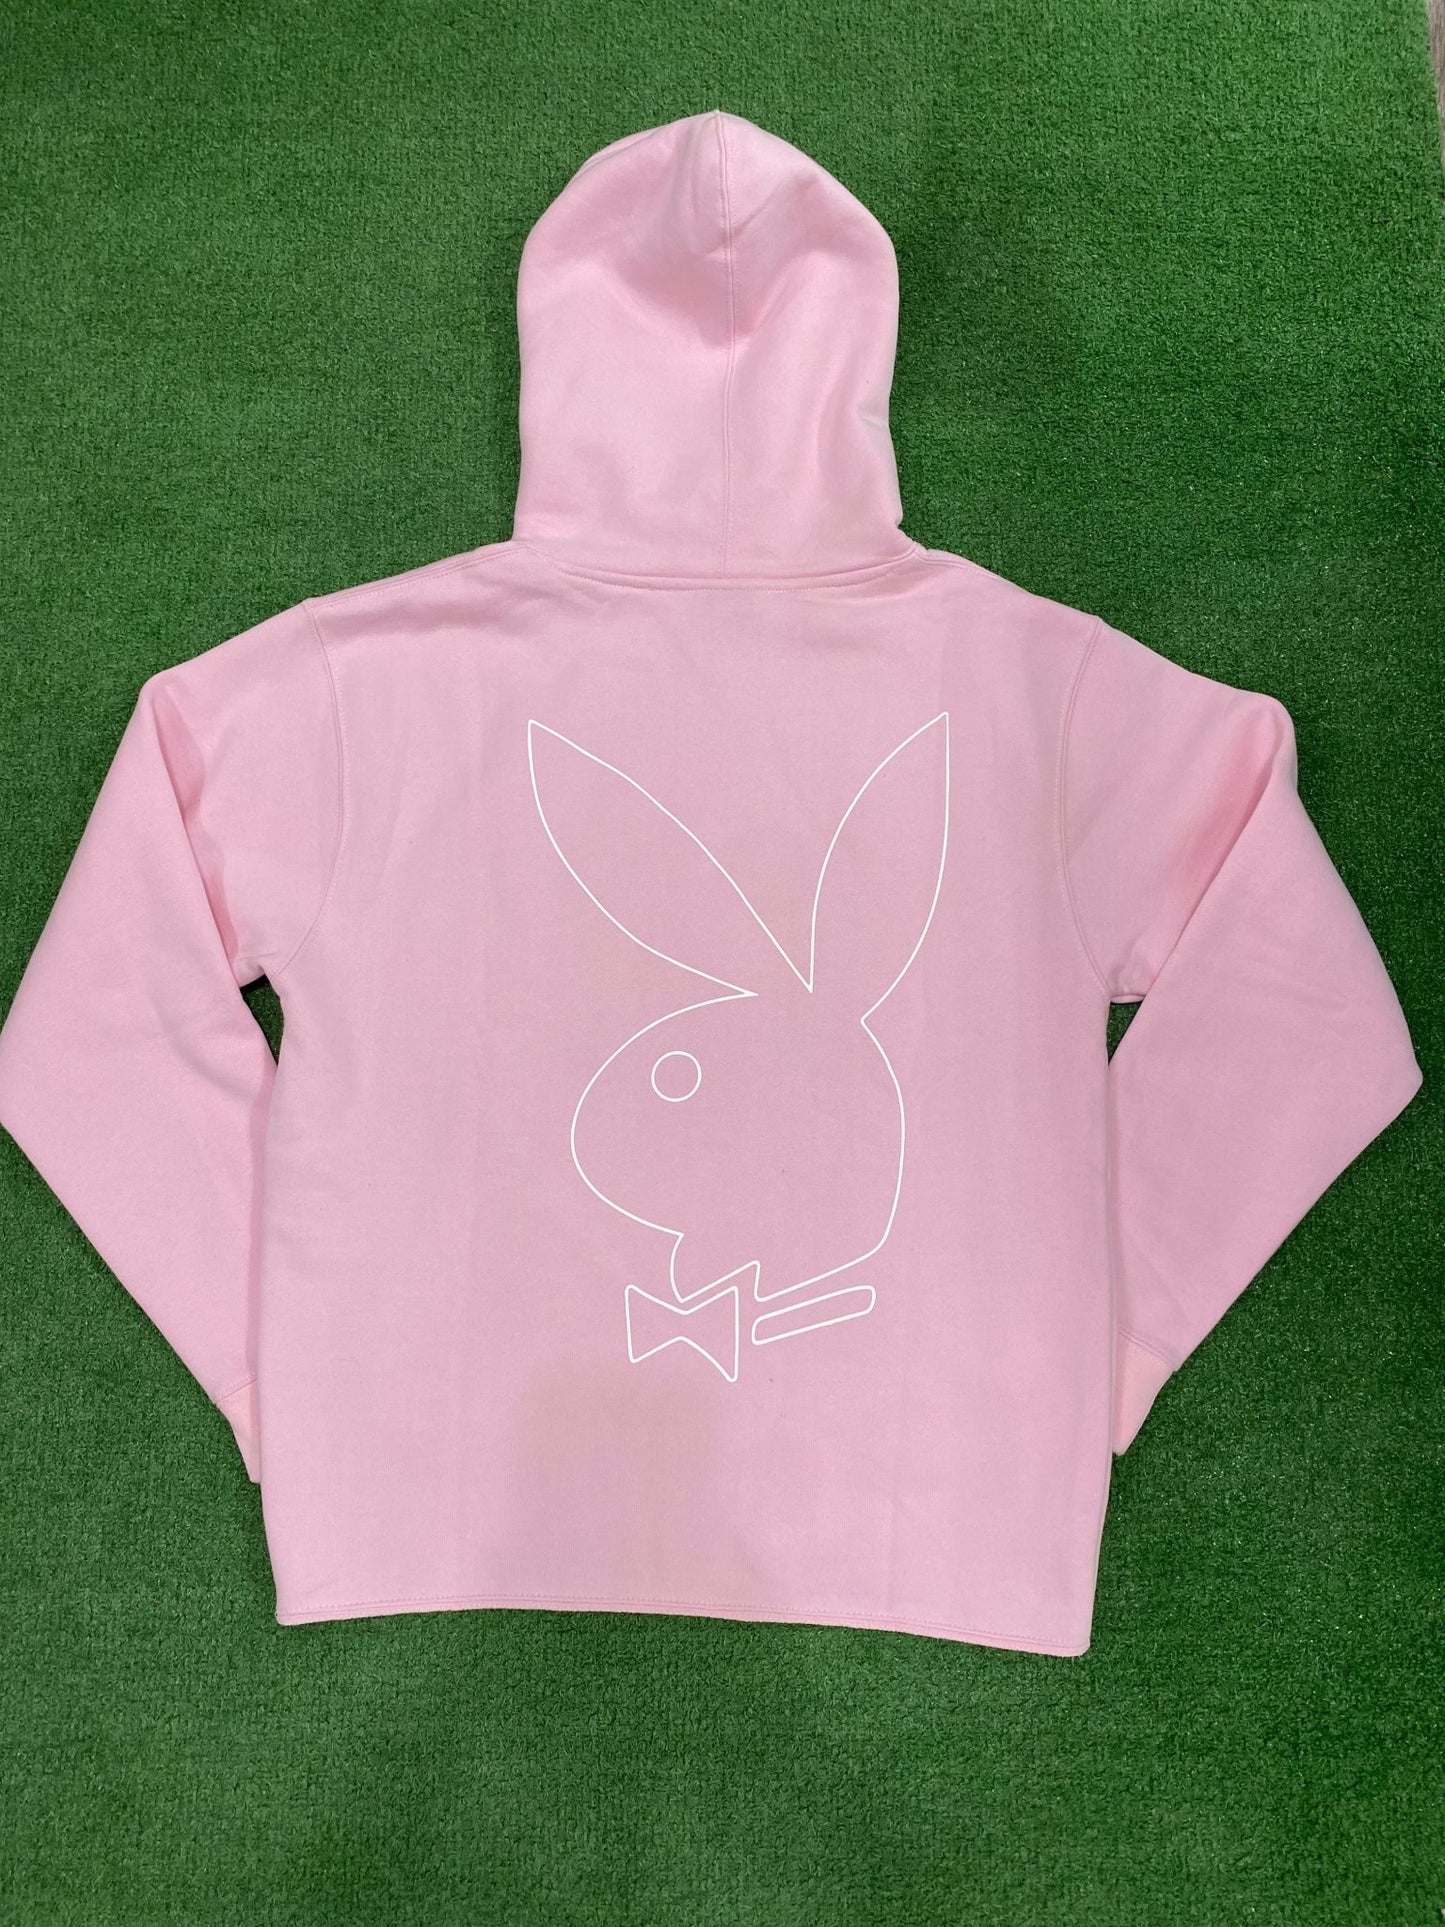 Revenge x Playboy Bunny Hoodie Pink (Gently Used) - Supra Sneakers